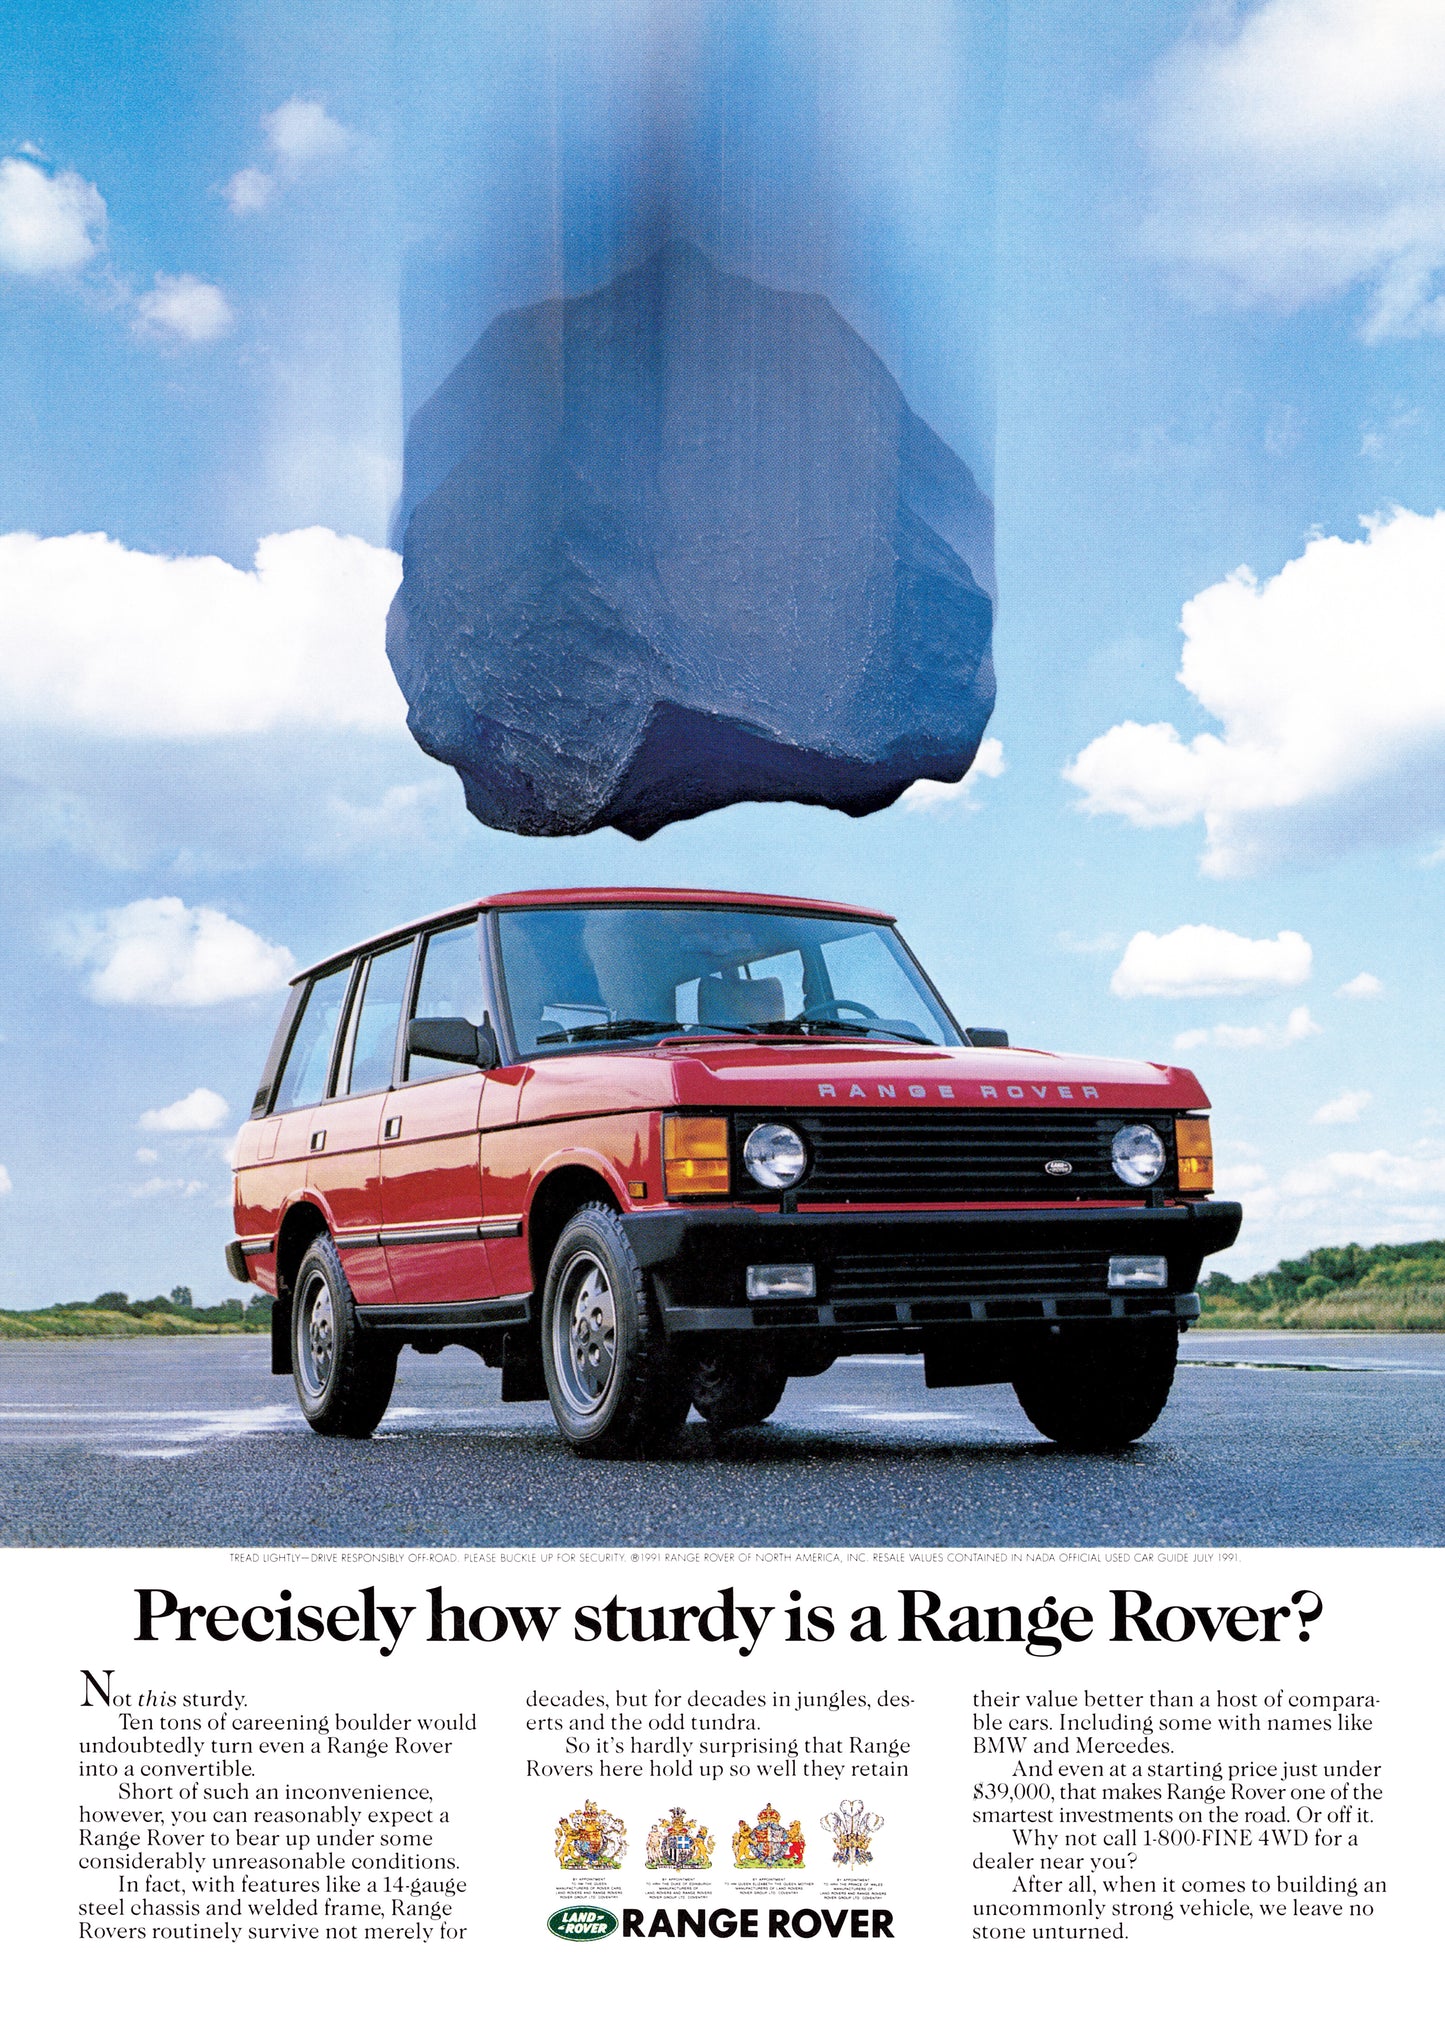 Les 2 livres " Une vie en Range Rover + Une vie en Porsche 911" + 10 posters A4 et livraison gratuite 